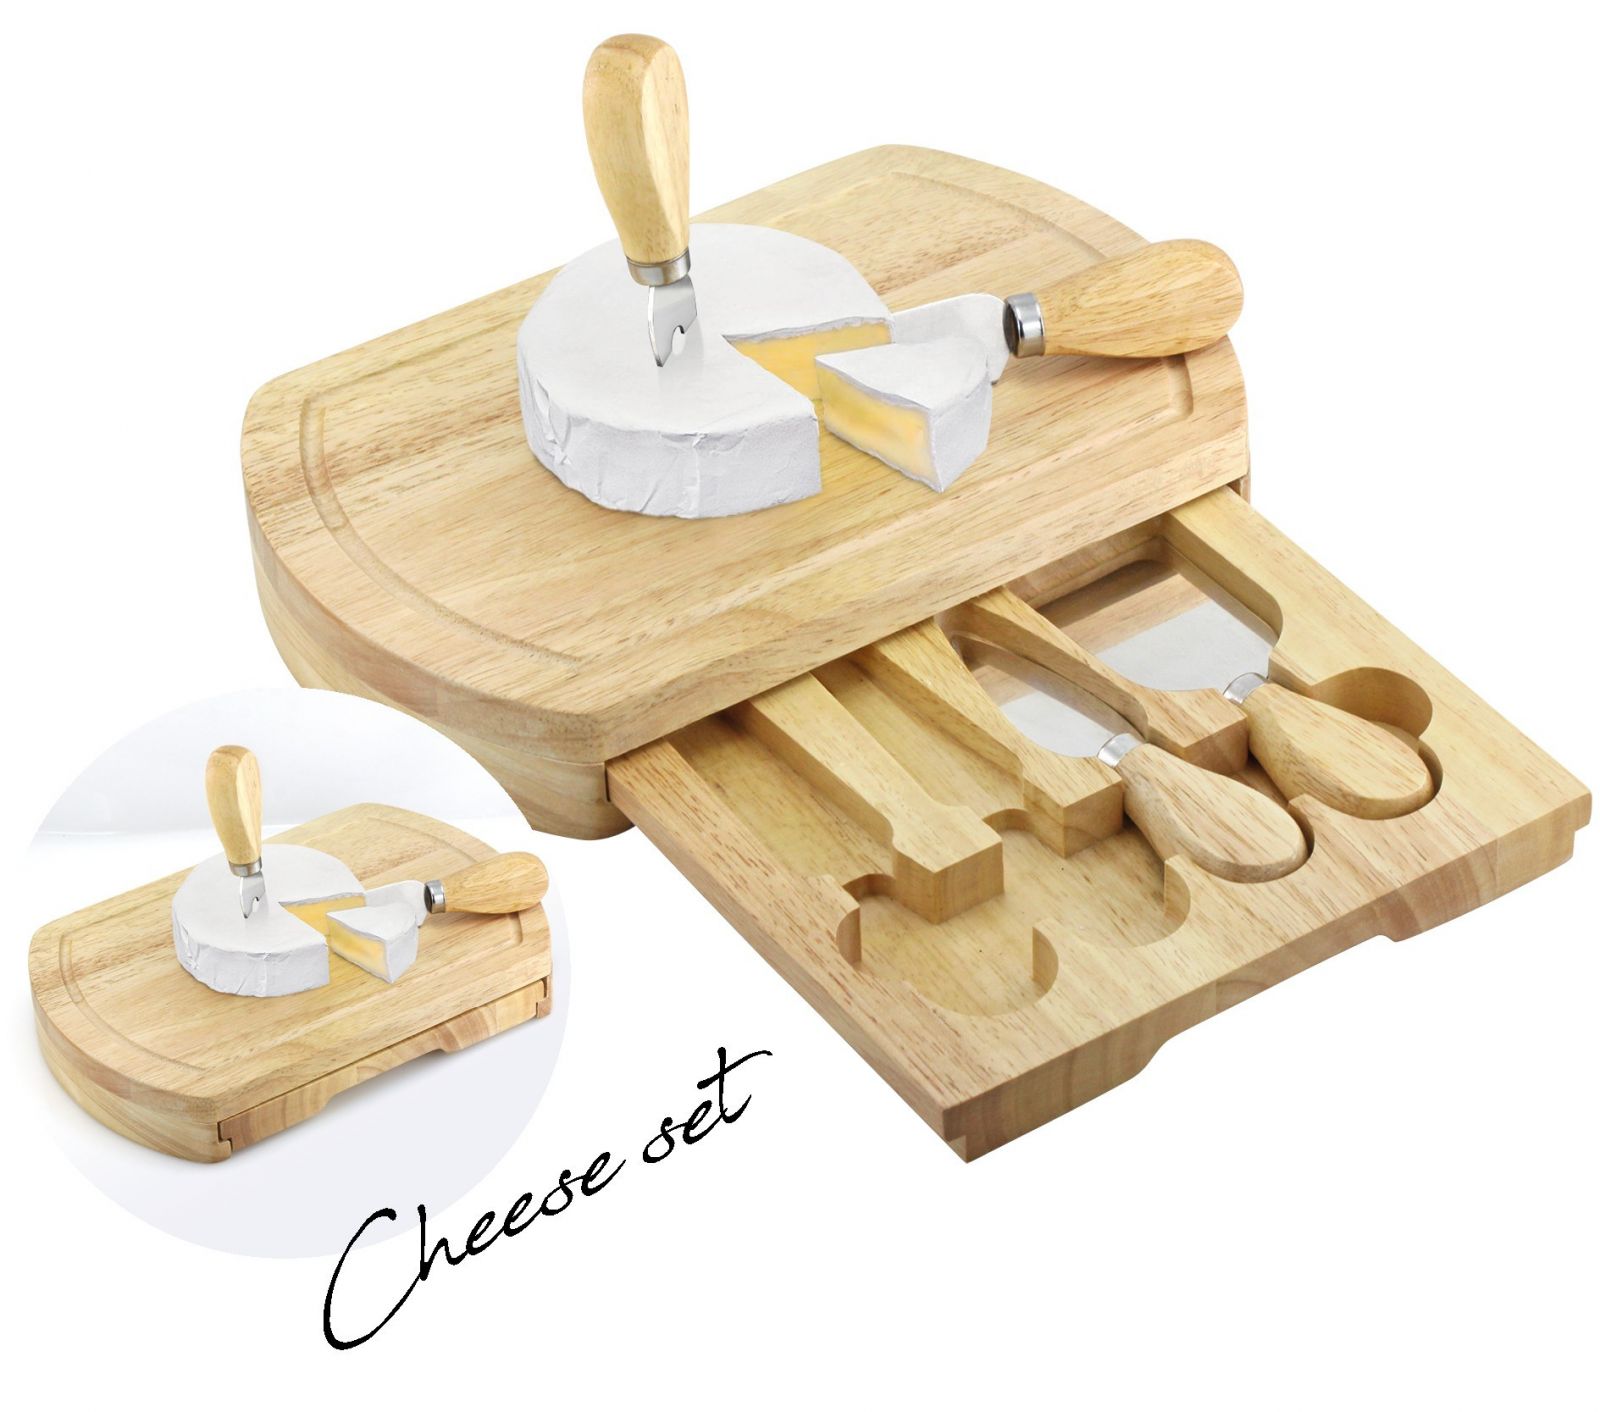 Kompletní sada na servírování sýrů MPM Cheese Set v dřevěné krabičce o rozměrech 249 x 163 x 38 mm. Sada obsahuje dva typy nožů, škrabku a vidličku, vše z nerezové oceli a dřeva Q04. - Q04.3833